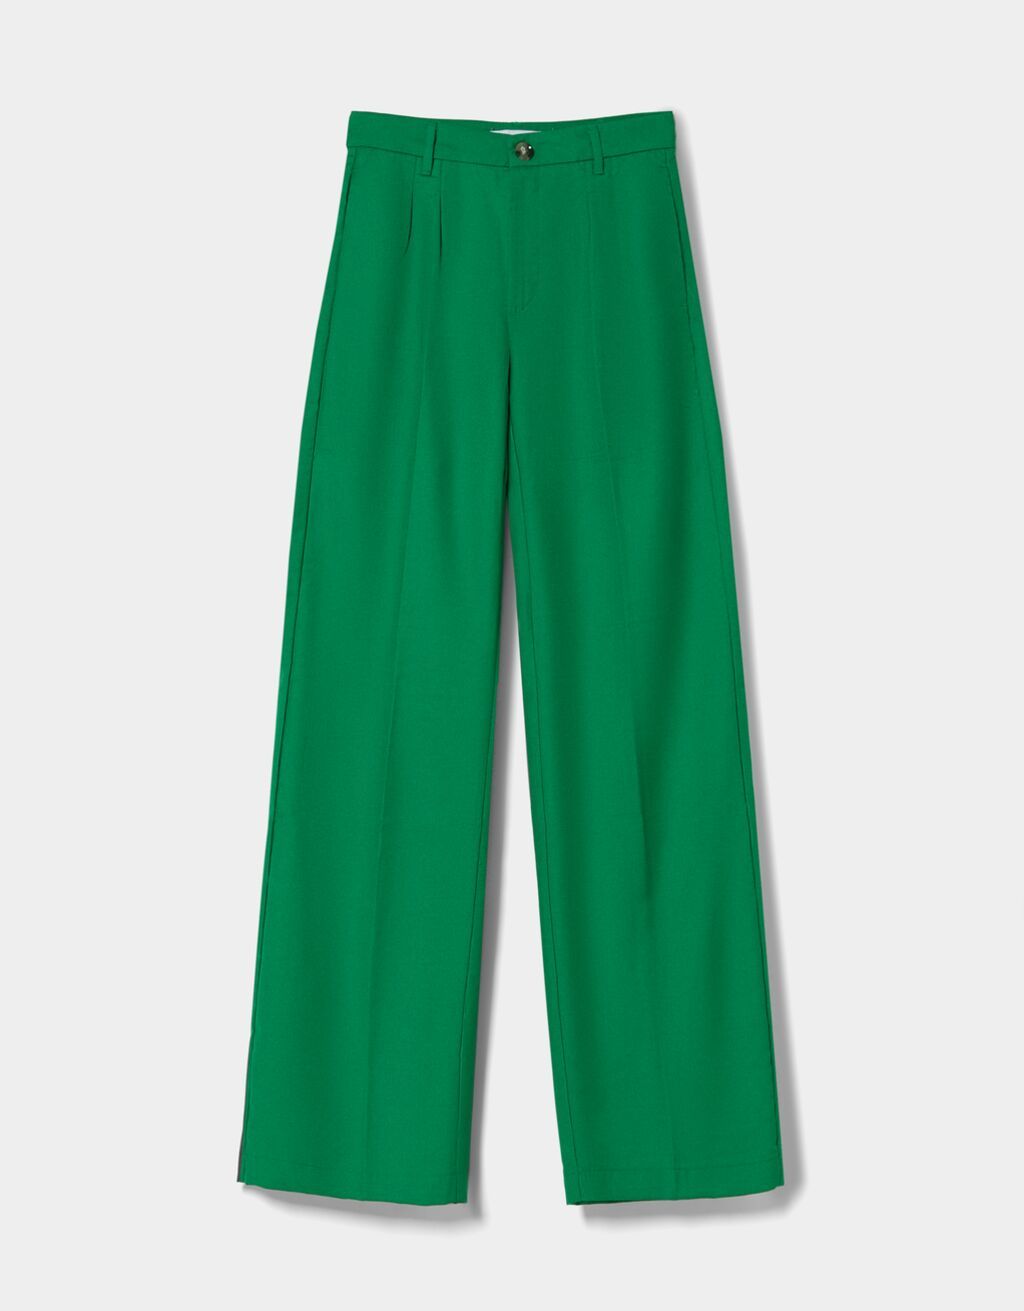 Trascendencia bosquejo Post impresionismo Cómo combinar un pantalón verde? 9 fichajes para tu armario | Moda